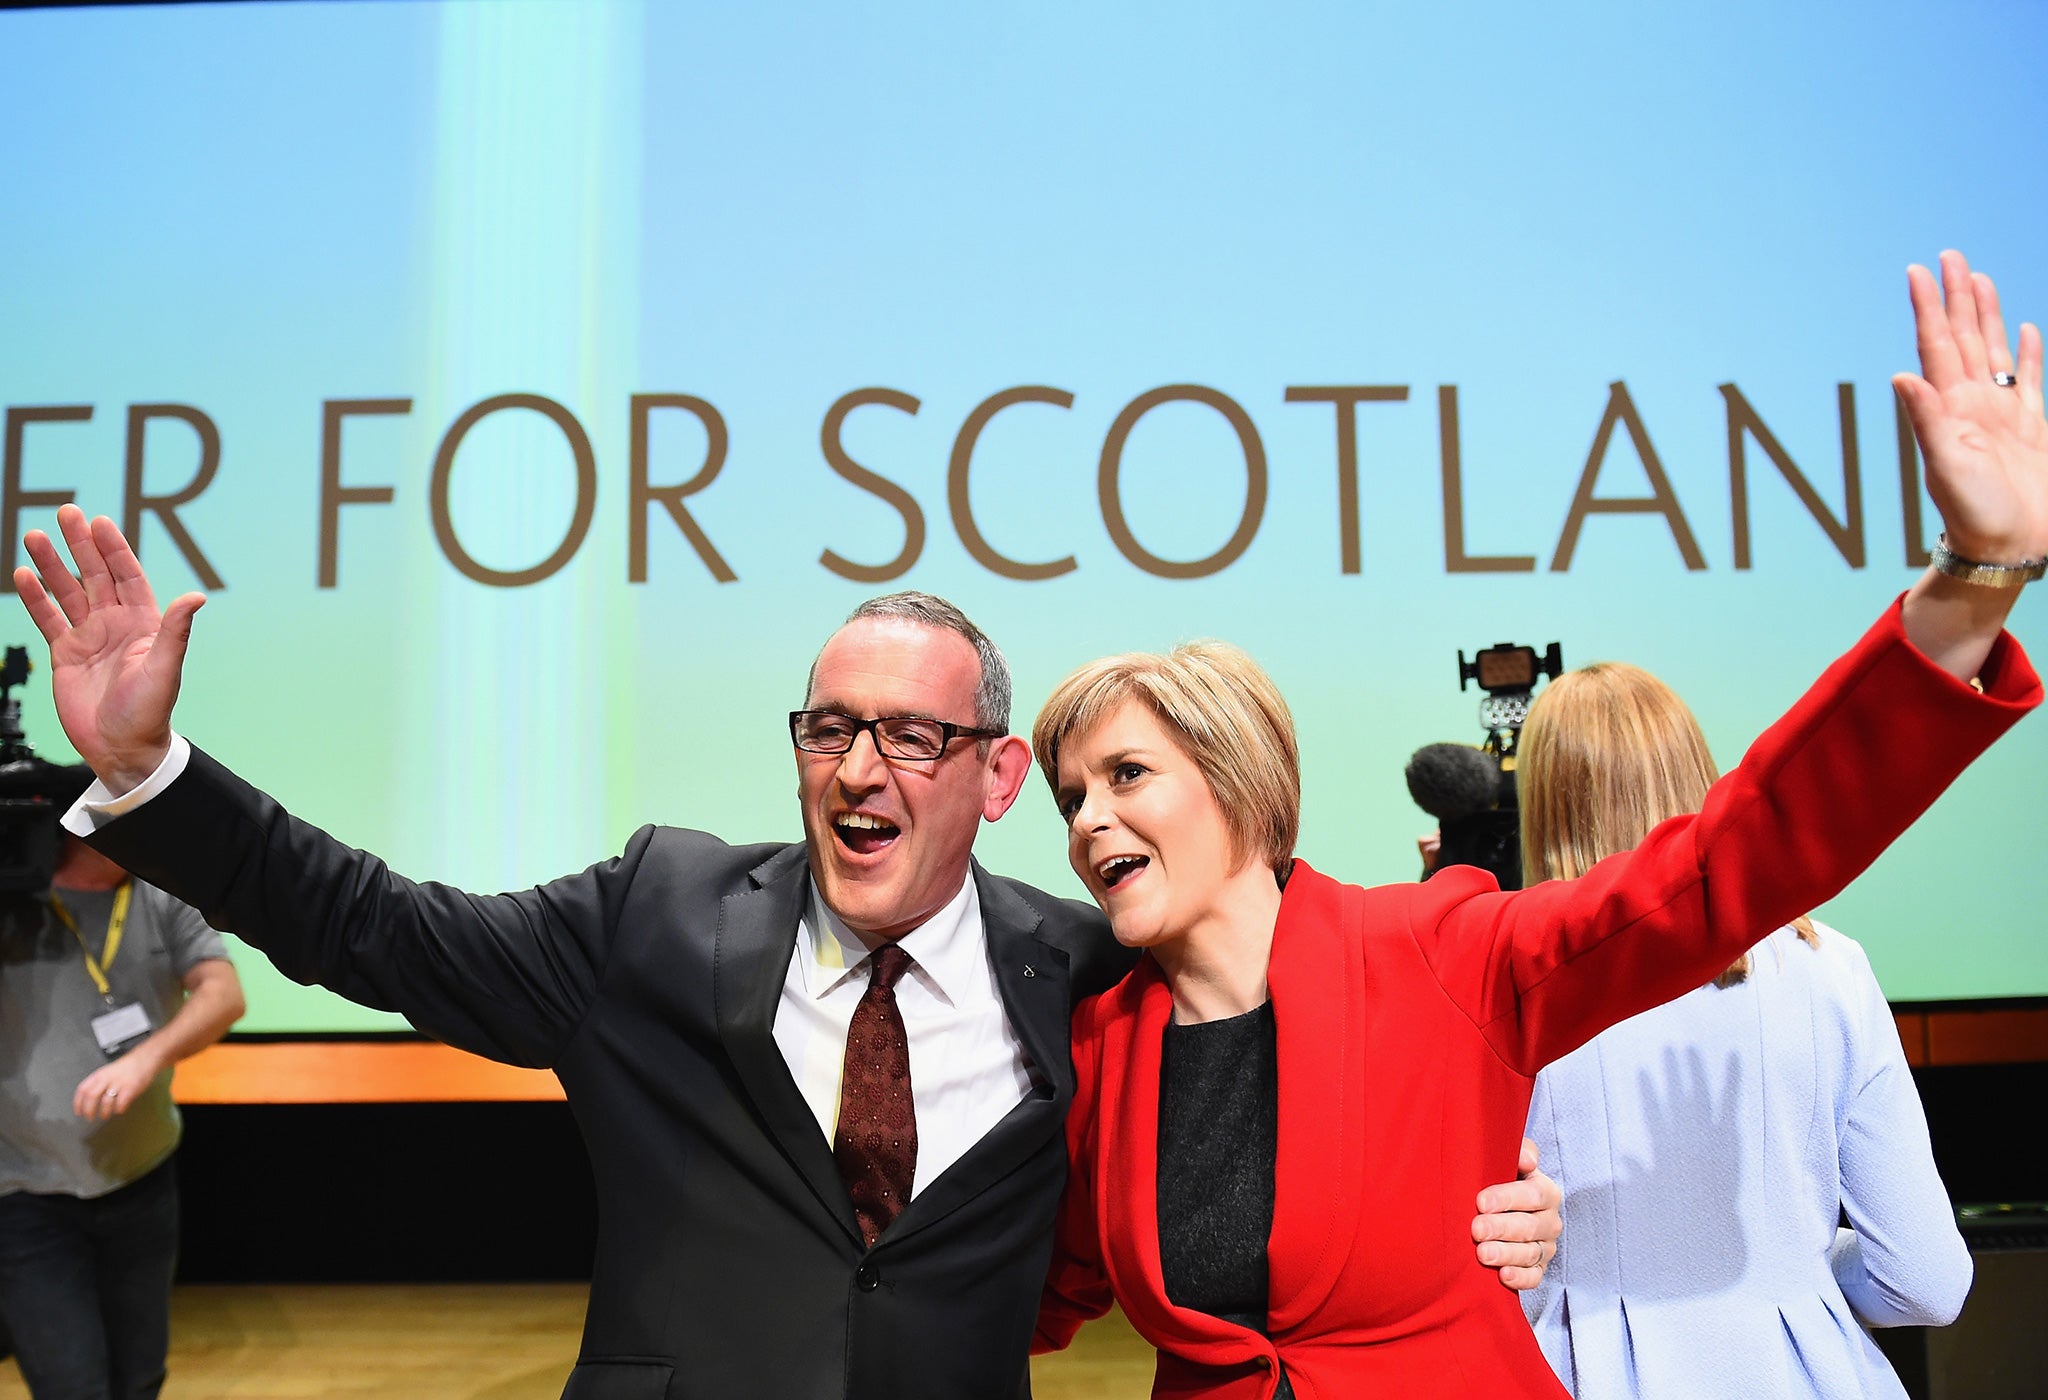 Stewart Hosie with the SNP leader Nicola Sturgeon